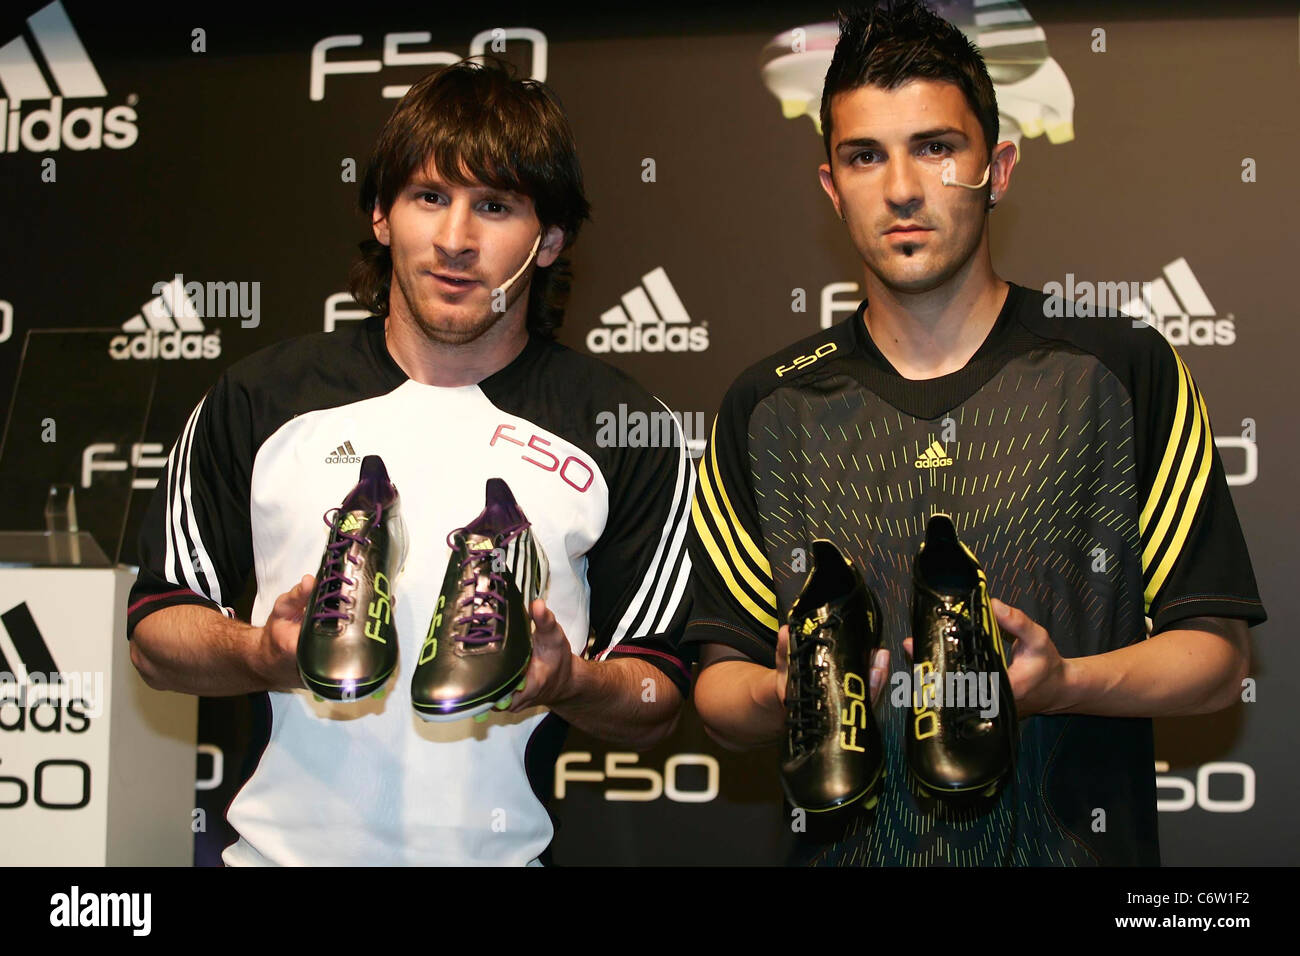 David Villa und Lionel Messi Presse Konferenz für den Start der  AdZero-Fußballschuh Adidas F50 auf dem Circuit de Catalunya Stockfotografie  - Alamy